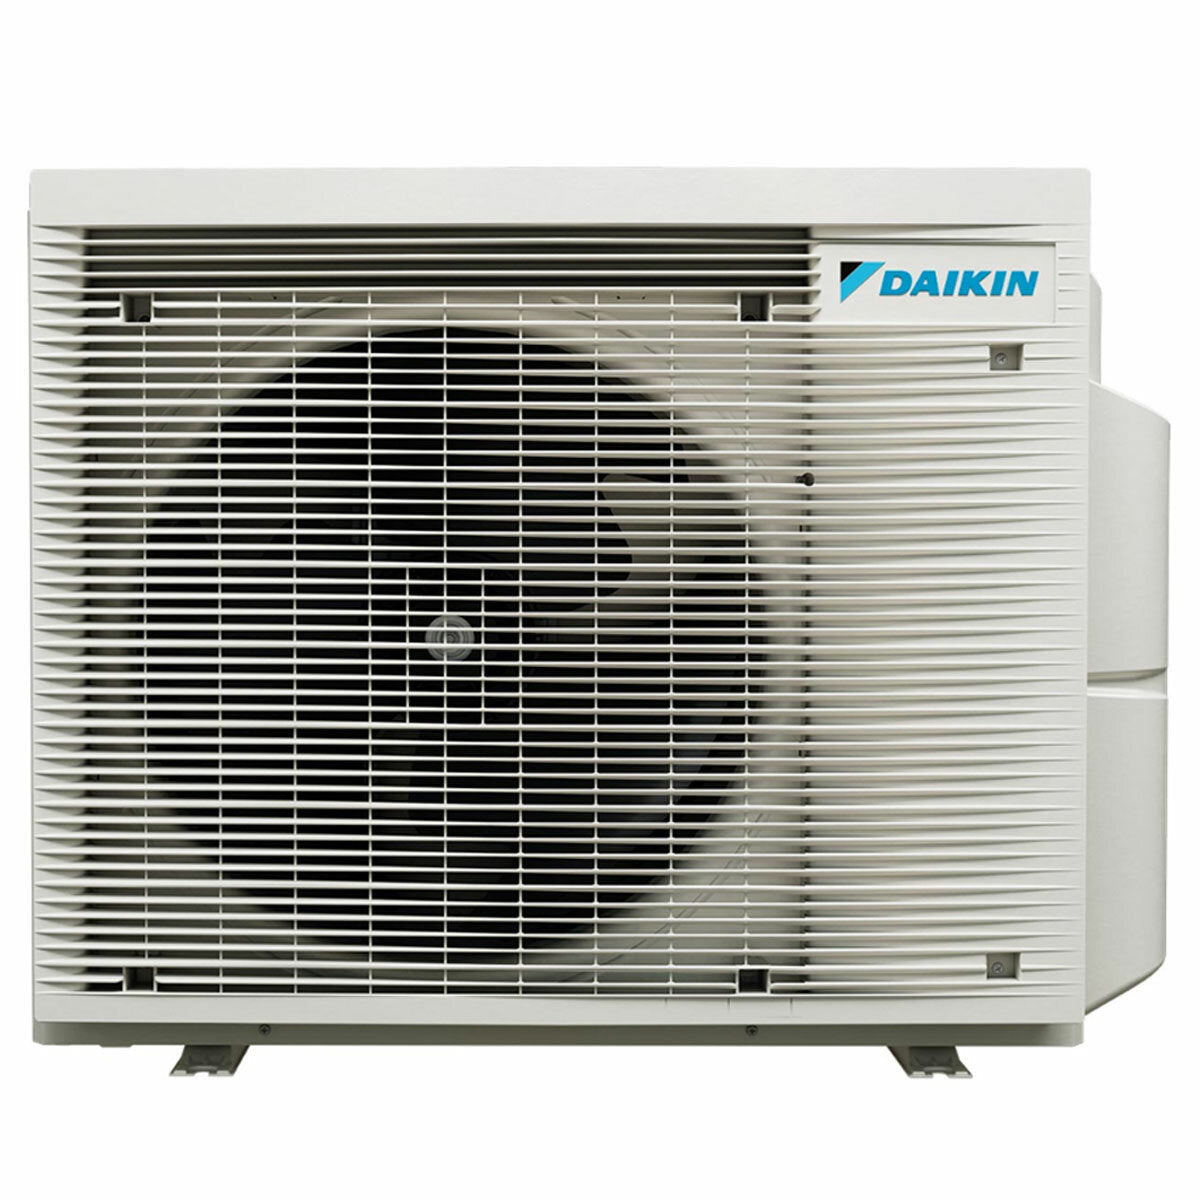 Daikin Stylish White trial split air conditioner 12000+12000+18000 BTU inverter A++ wifi external unit 7.4 kW